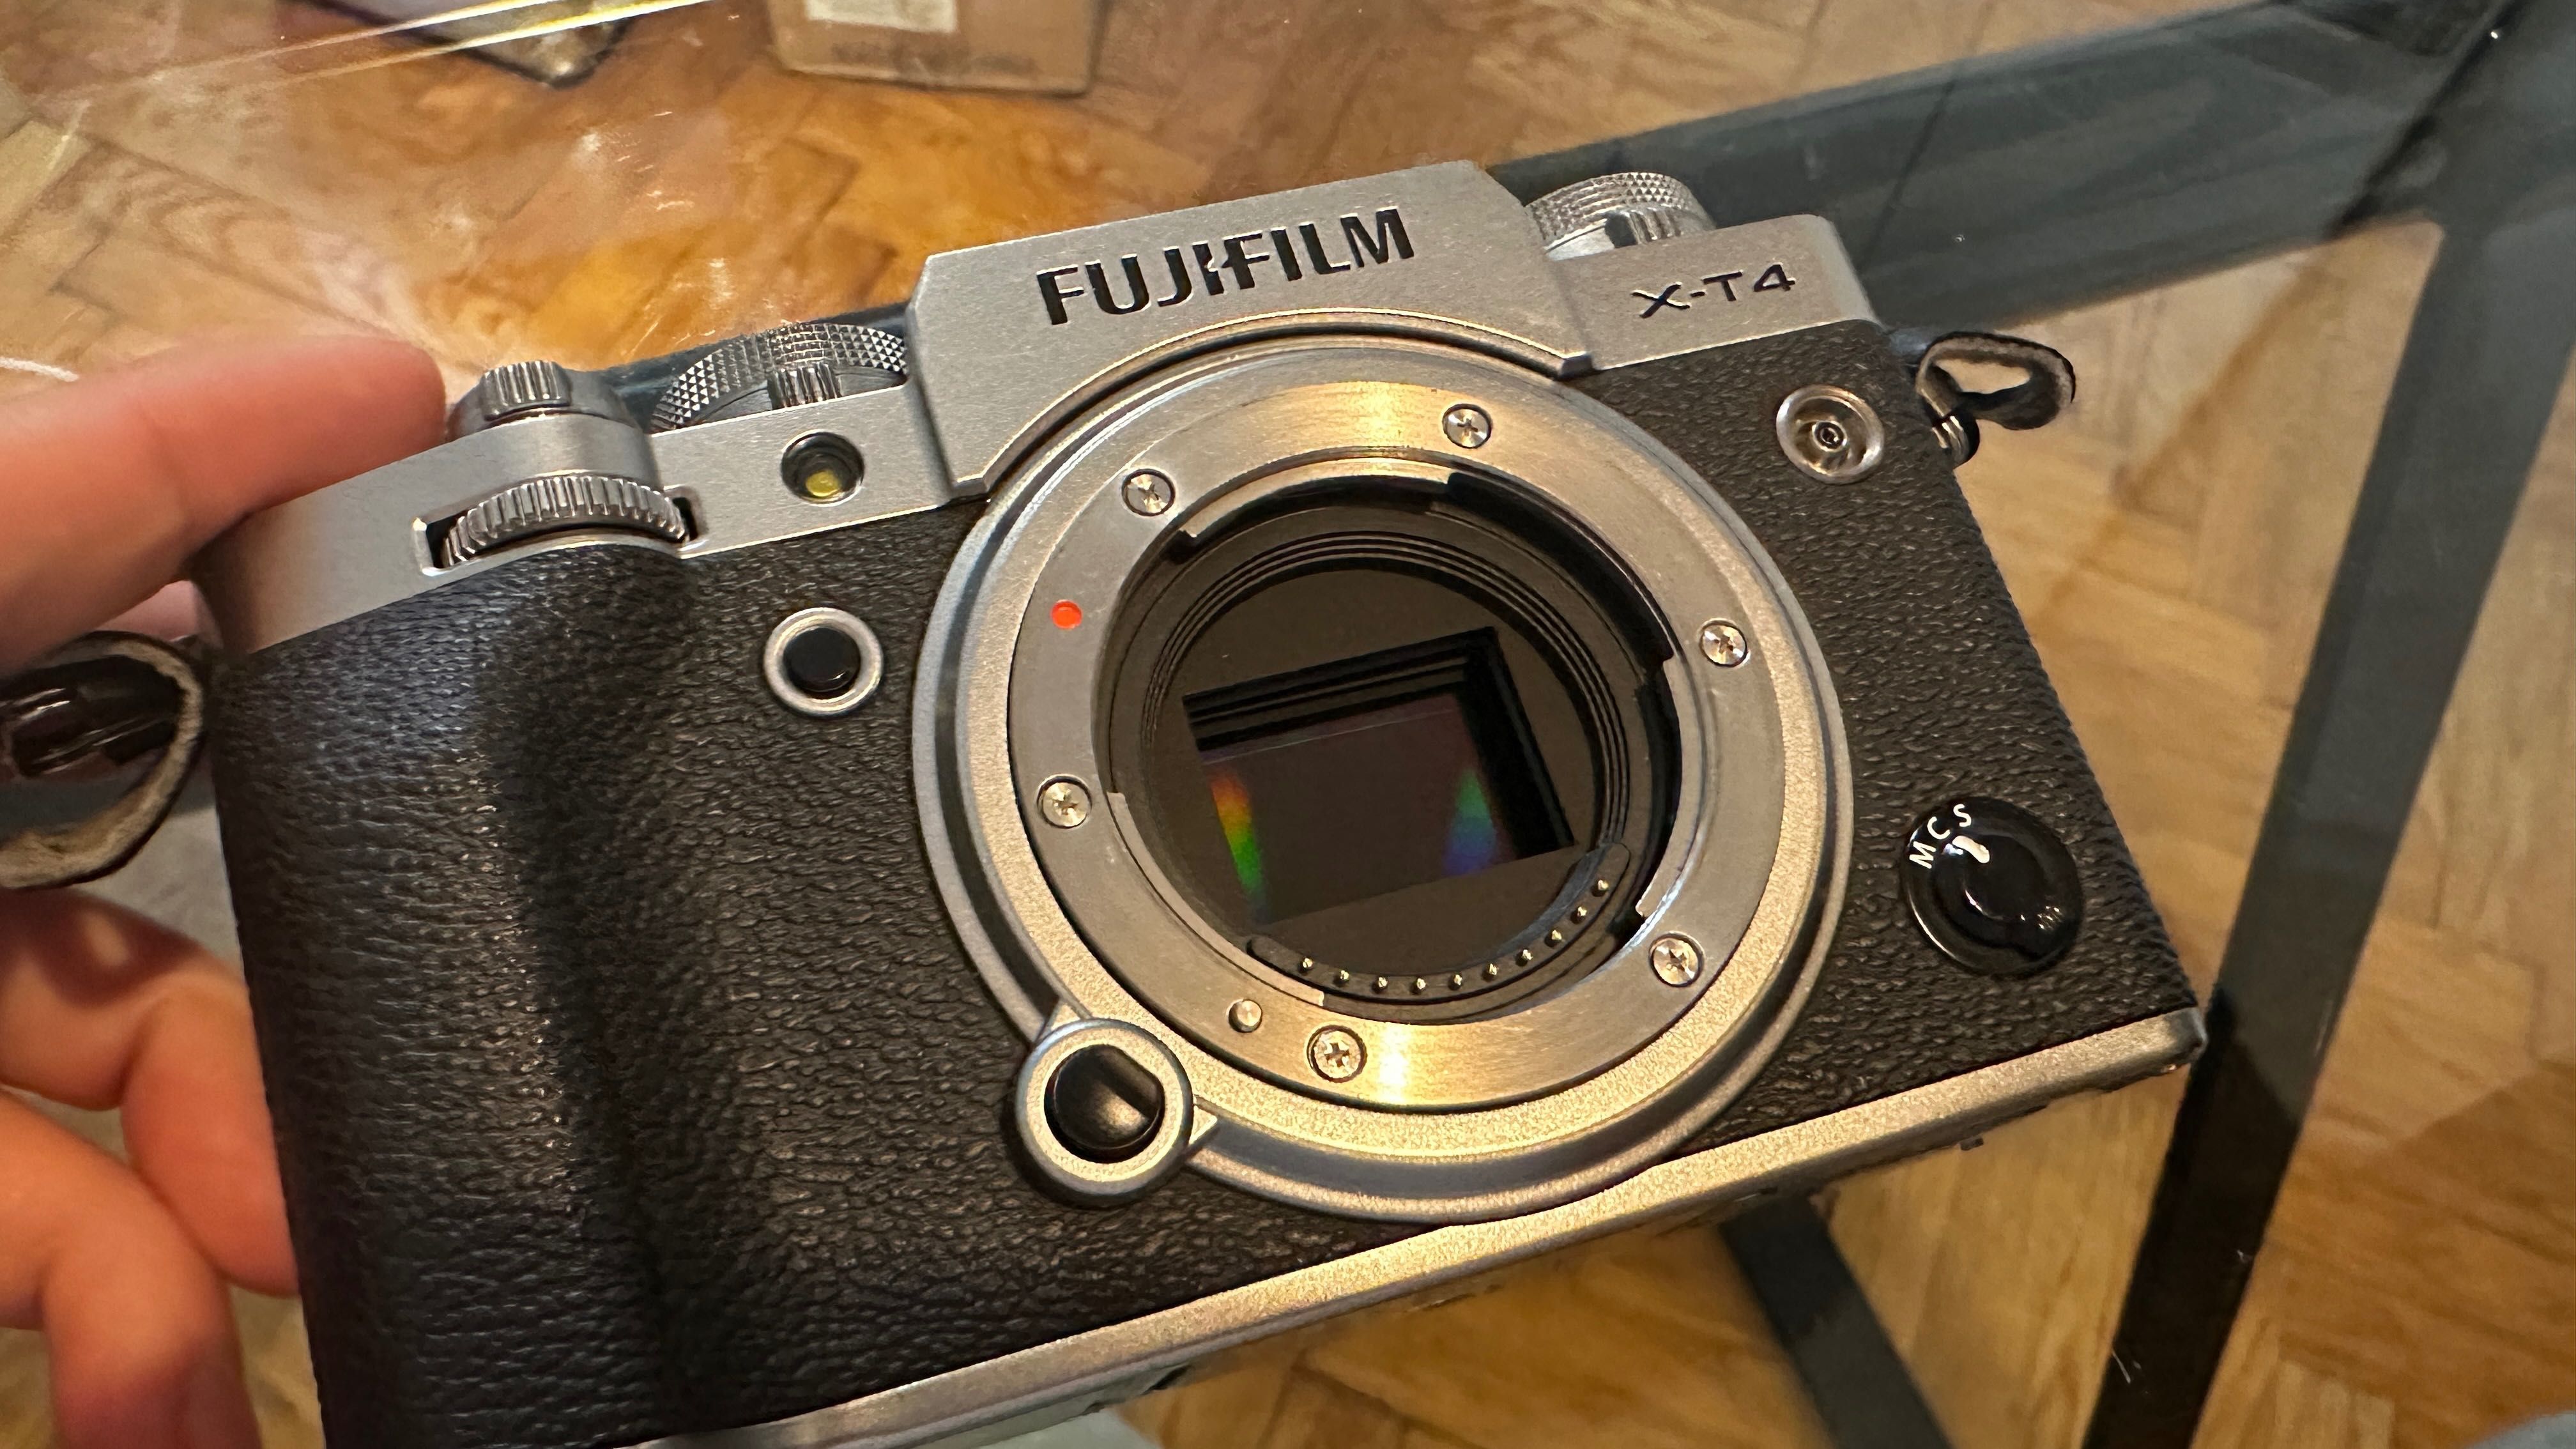 Fujifilm XT-4 body only